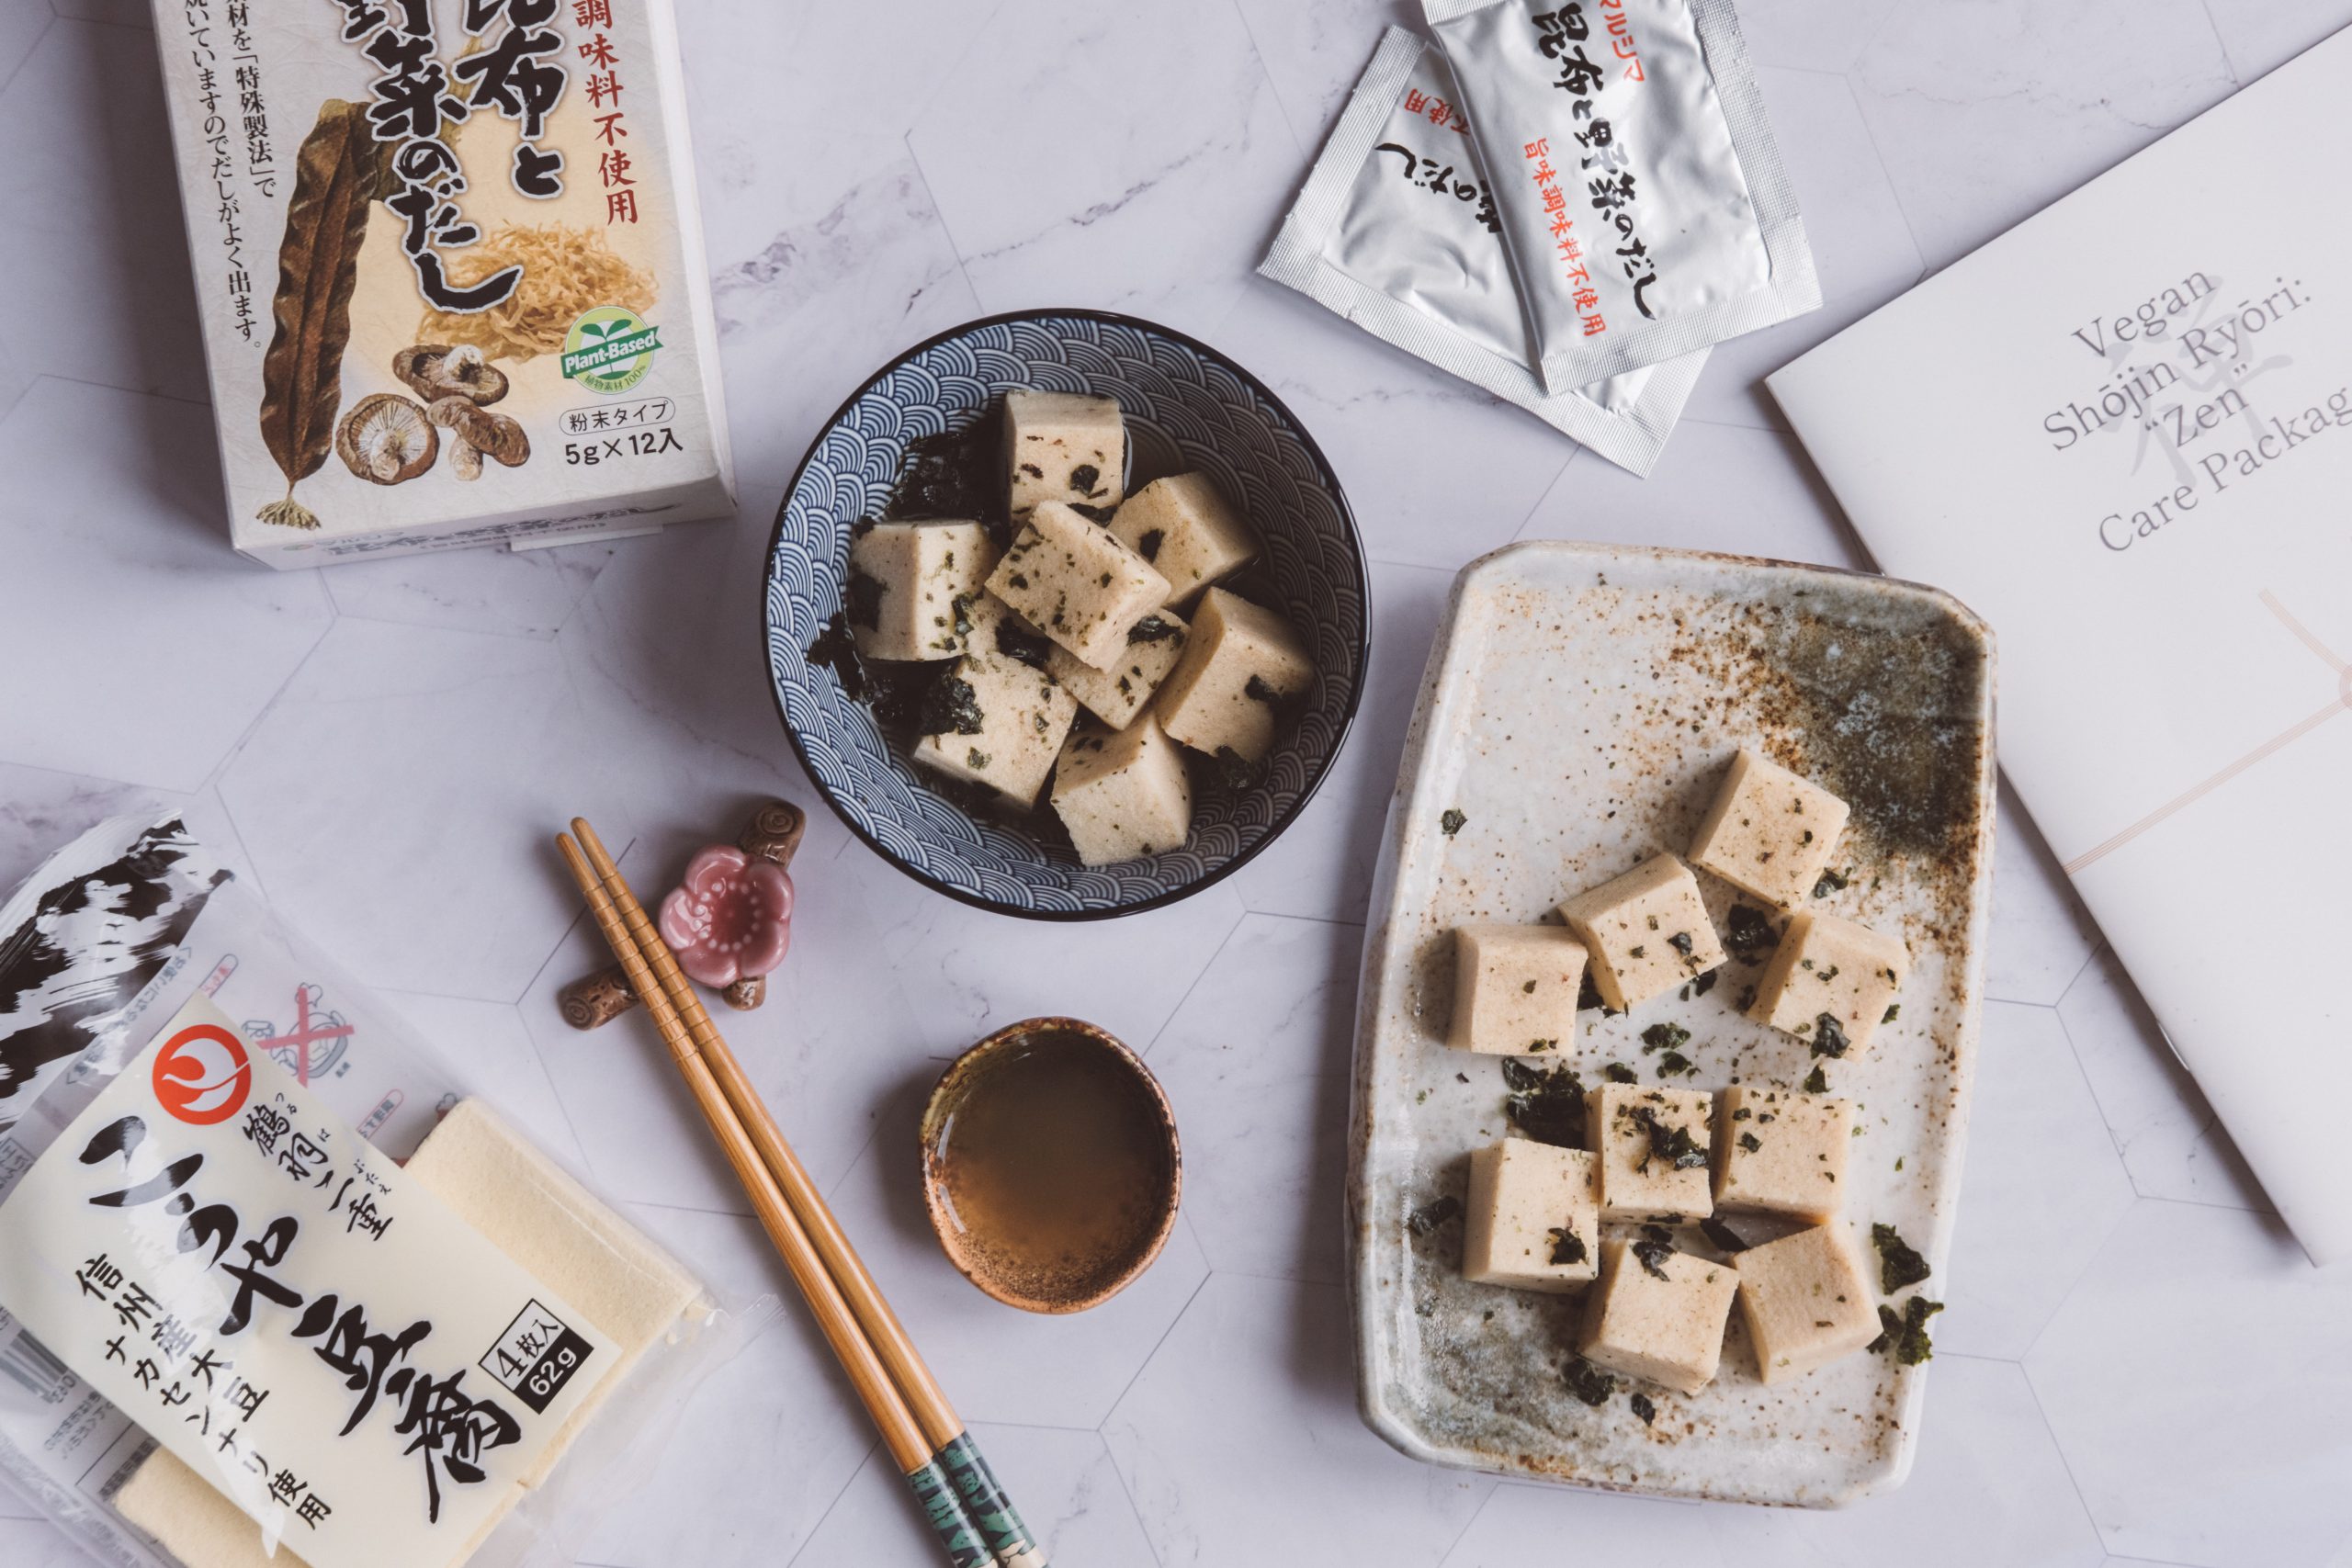 Koya Dofu Recipe I made using my Kokoro Care pack